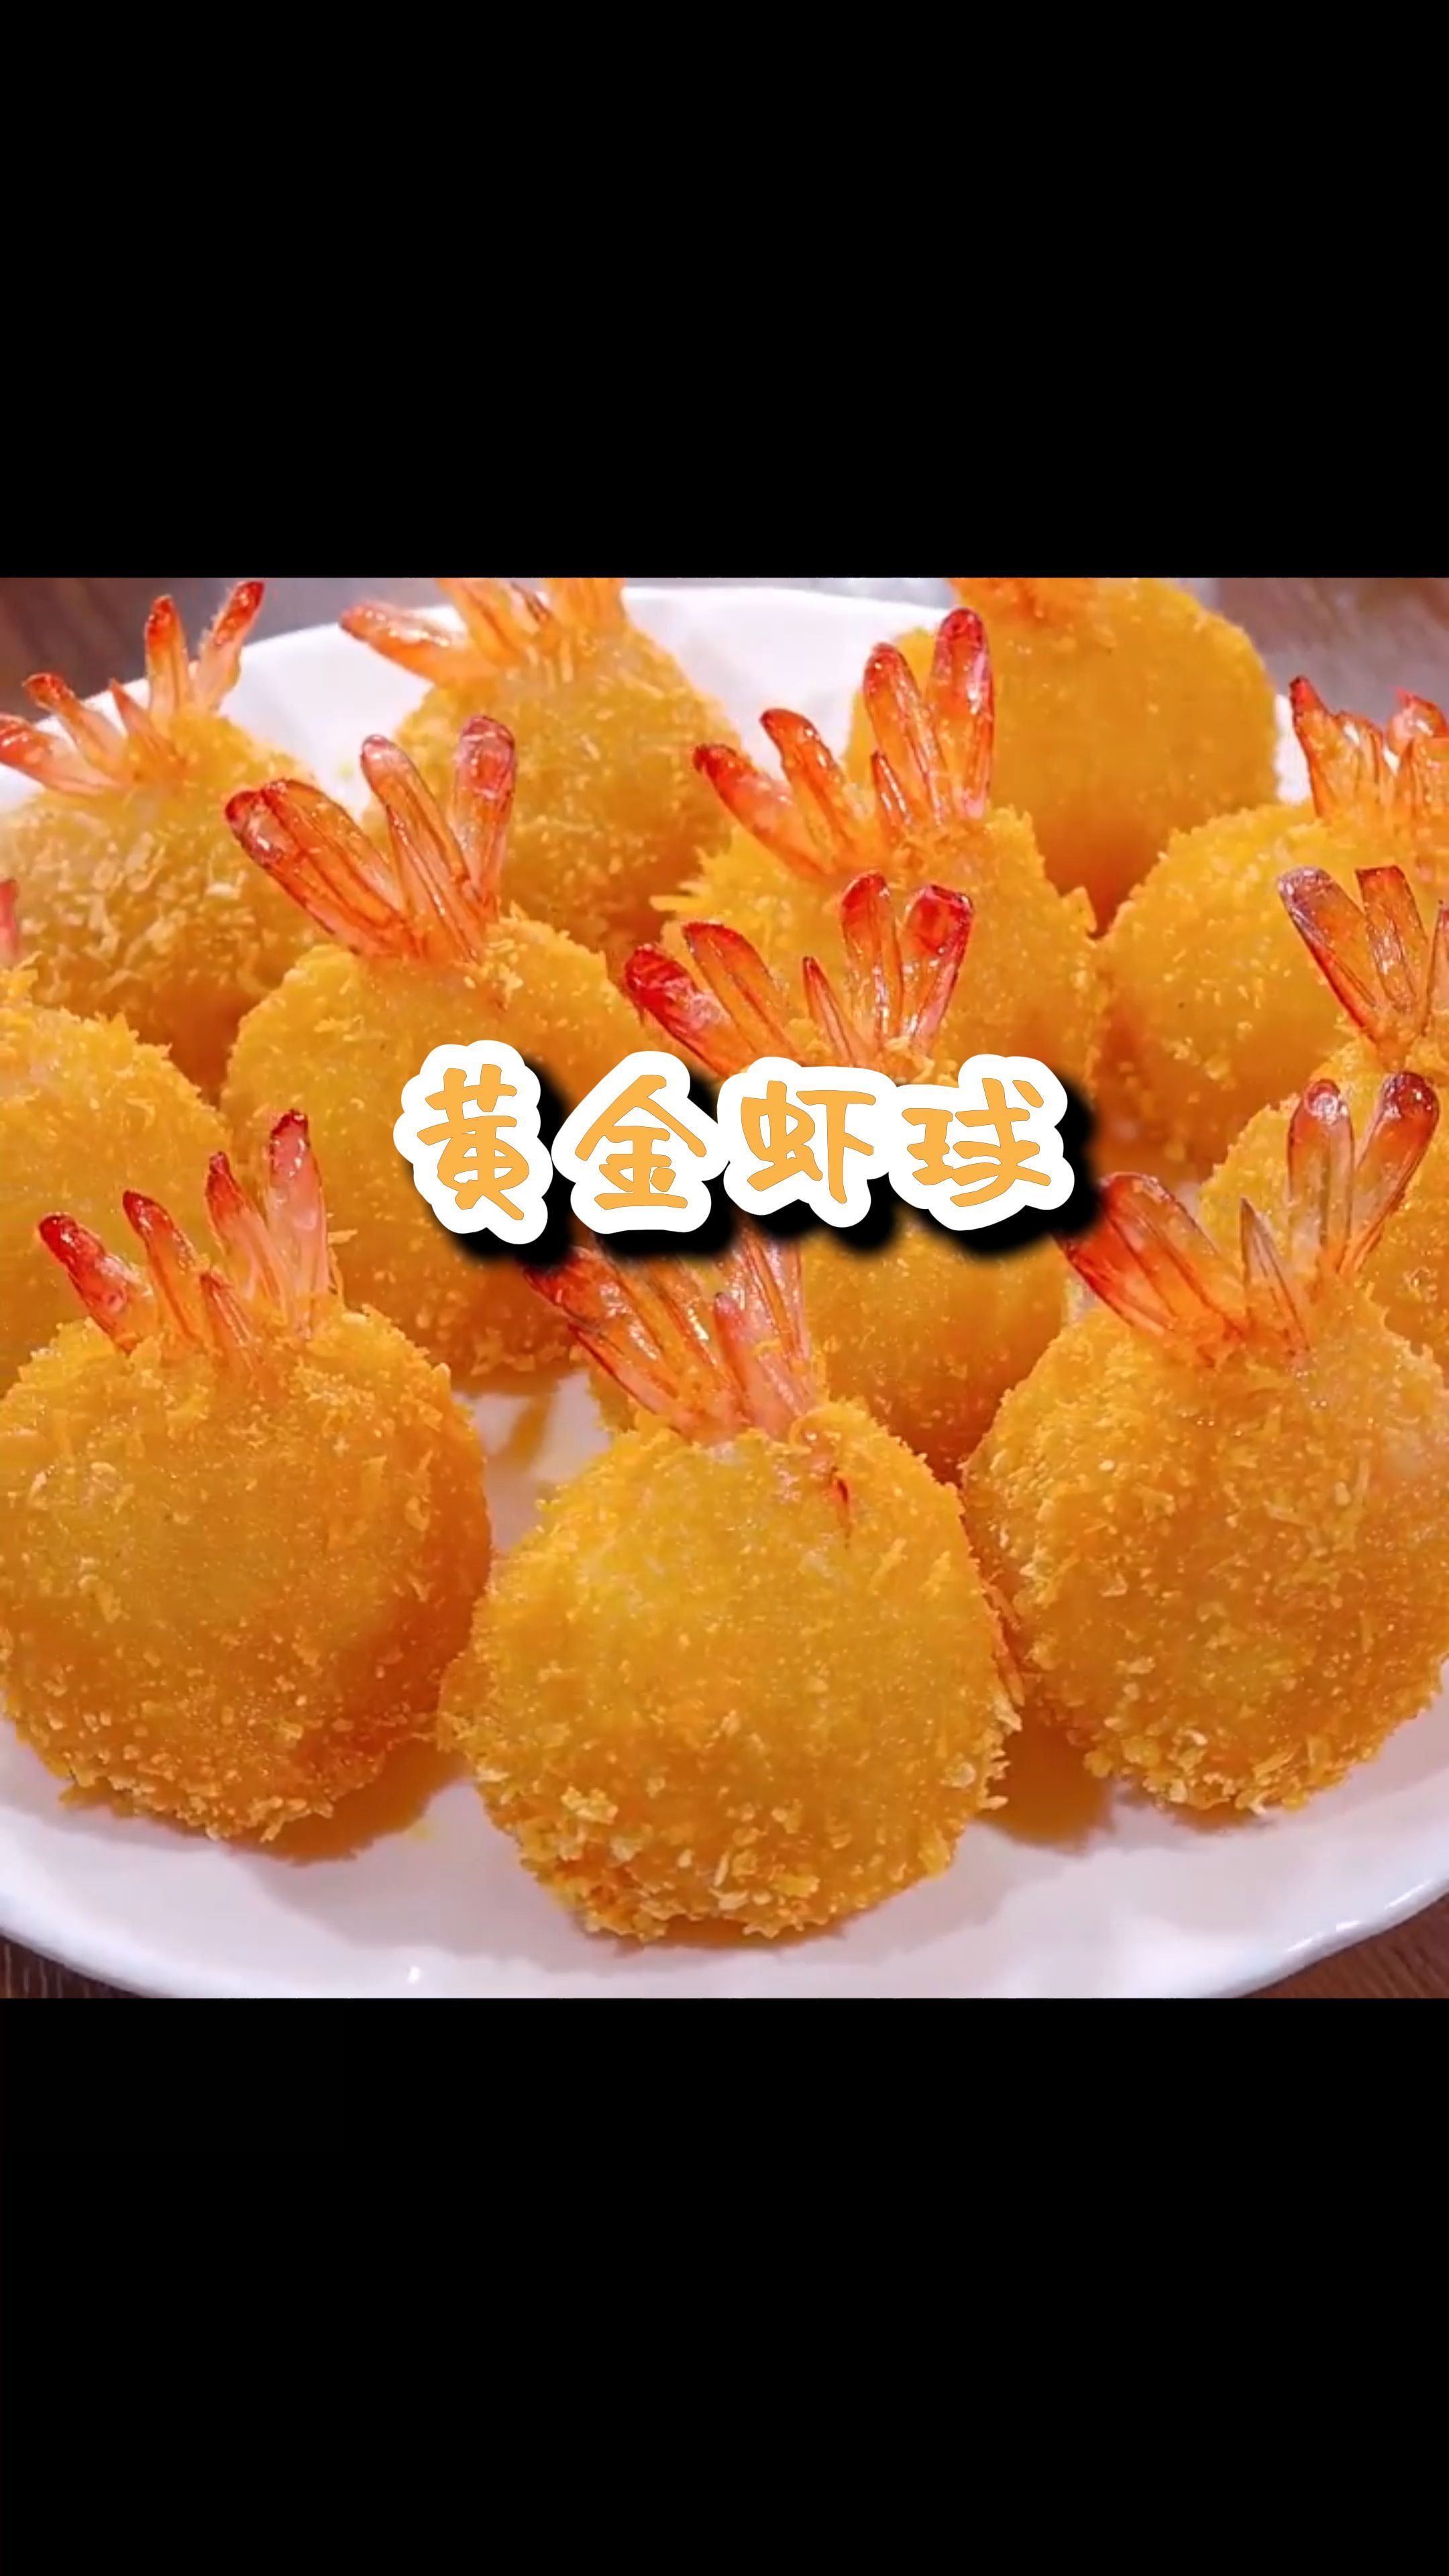 黄金虾球  台湾省传统的特色名菜   肉香味美、色泽诱人、口感甚佳  快来做给你最爱的人吃吧